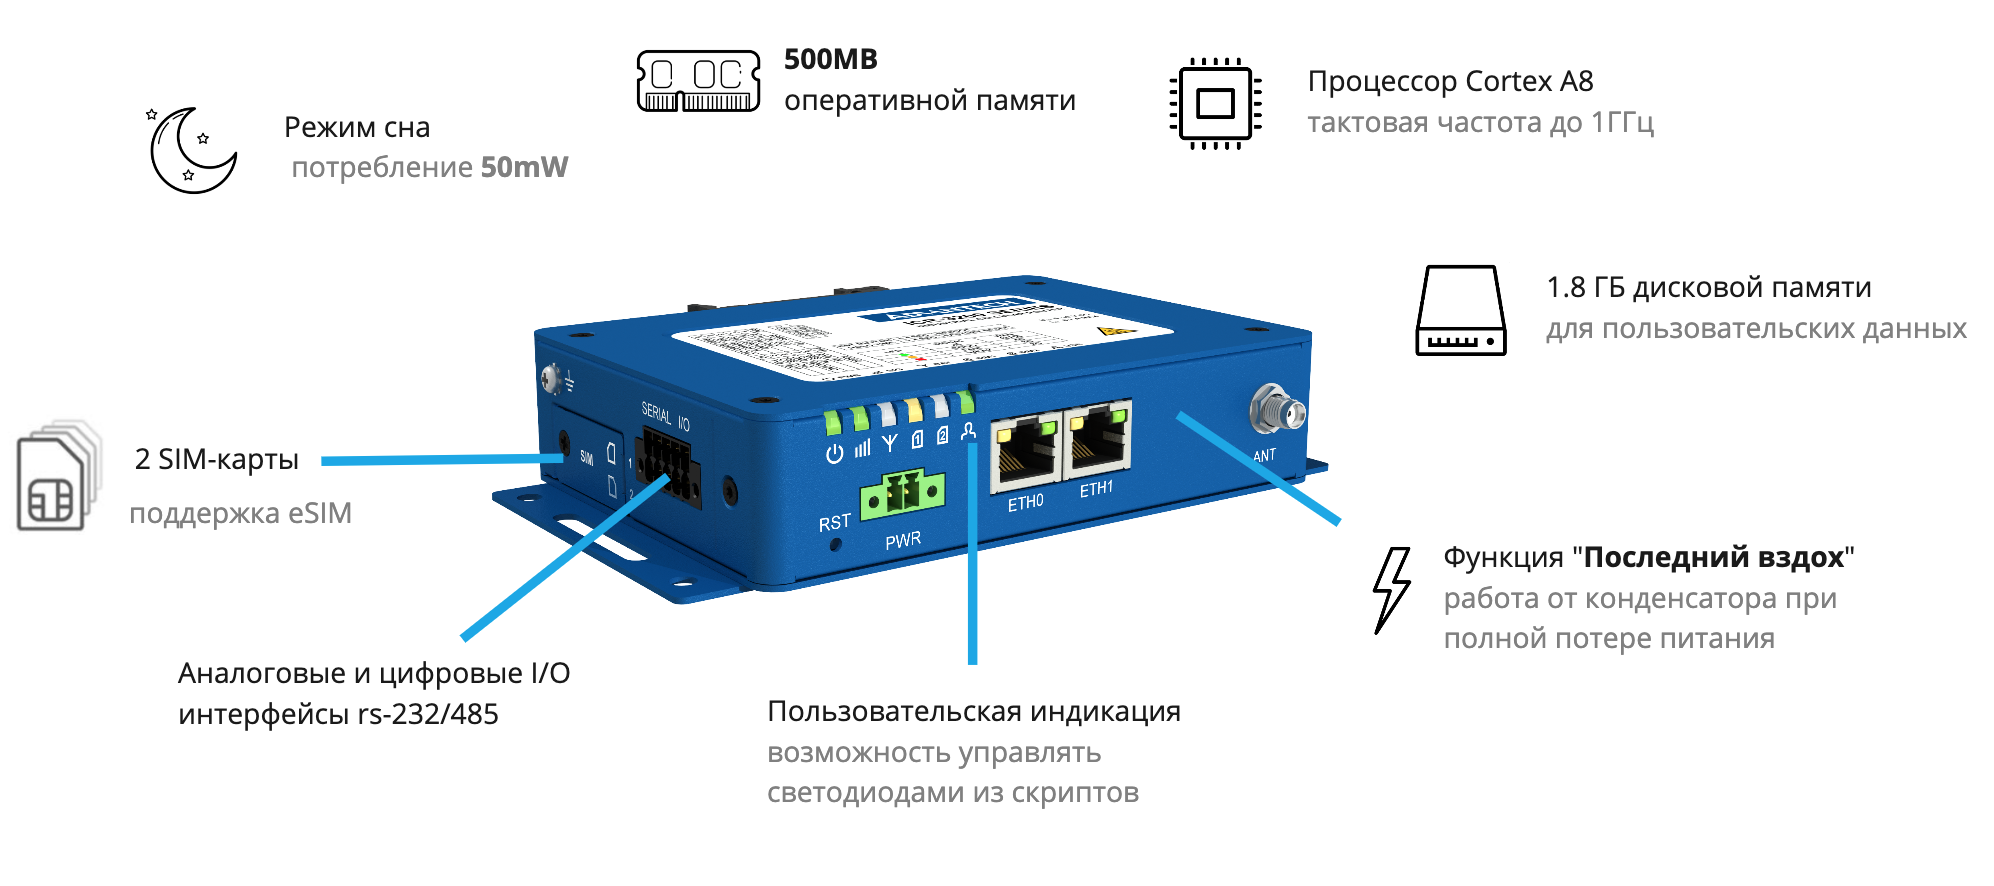 4G-роутер в роли универсального сервера для IoT - 1